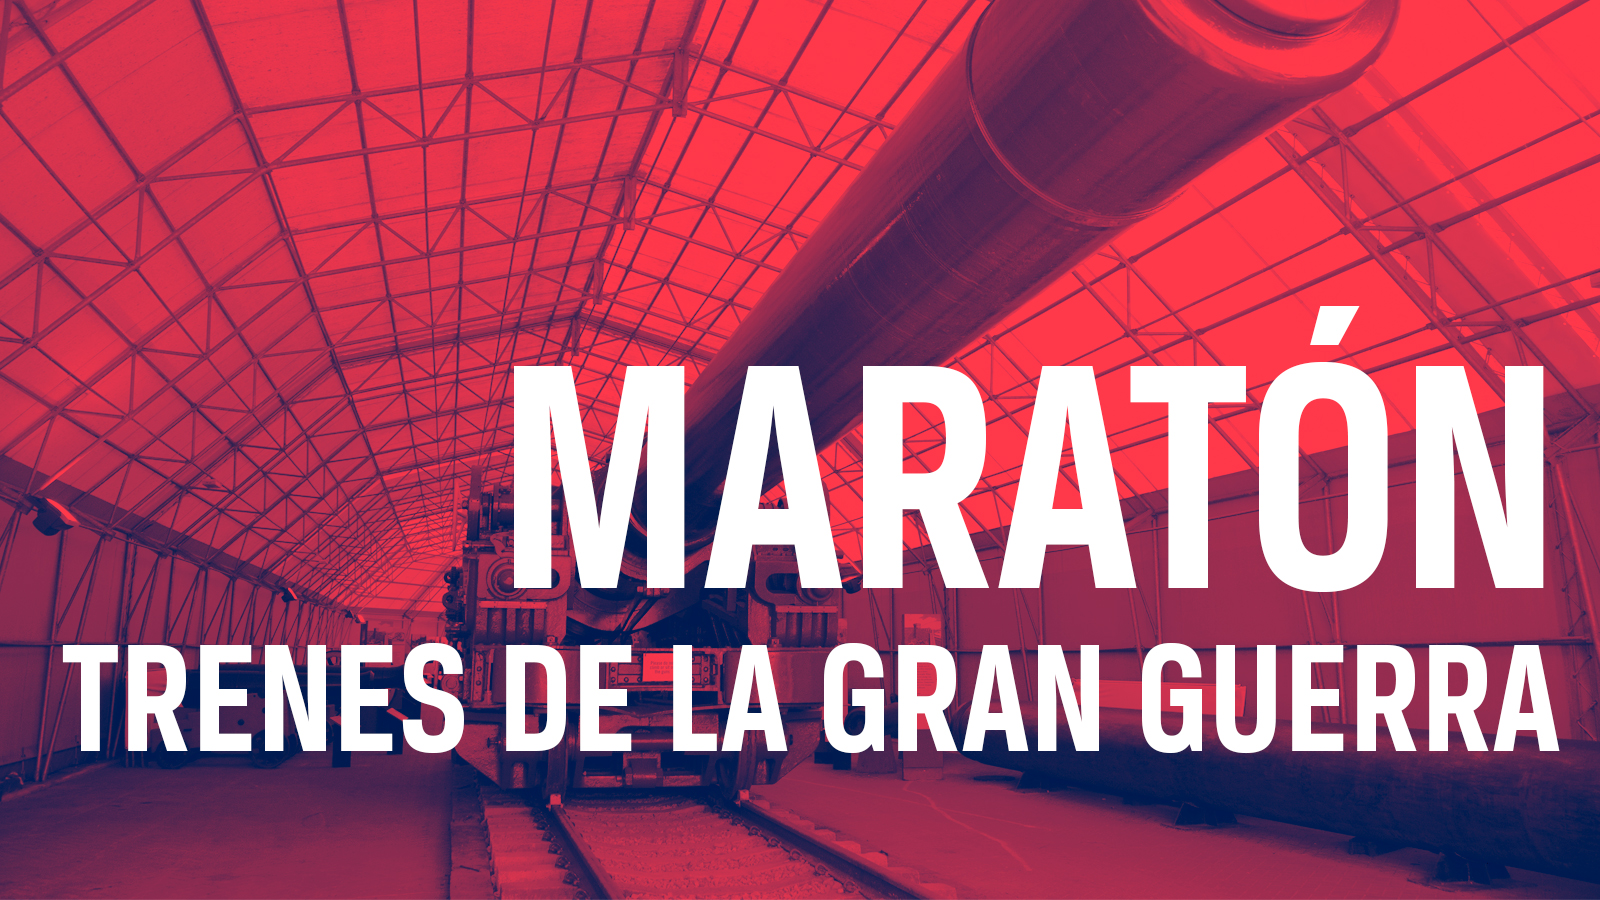 Maratón: Trenes de la Gran Guerra